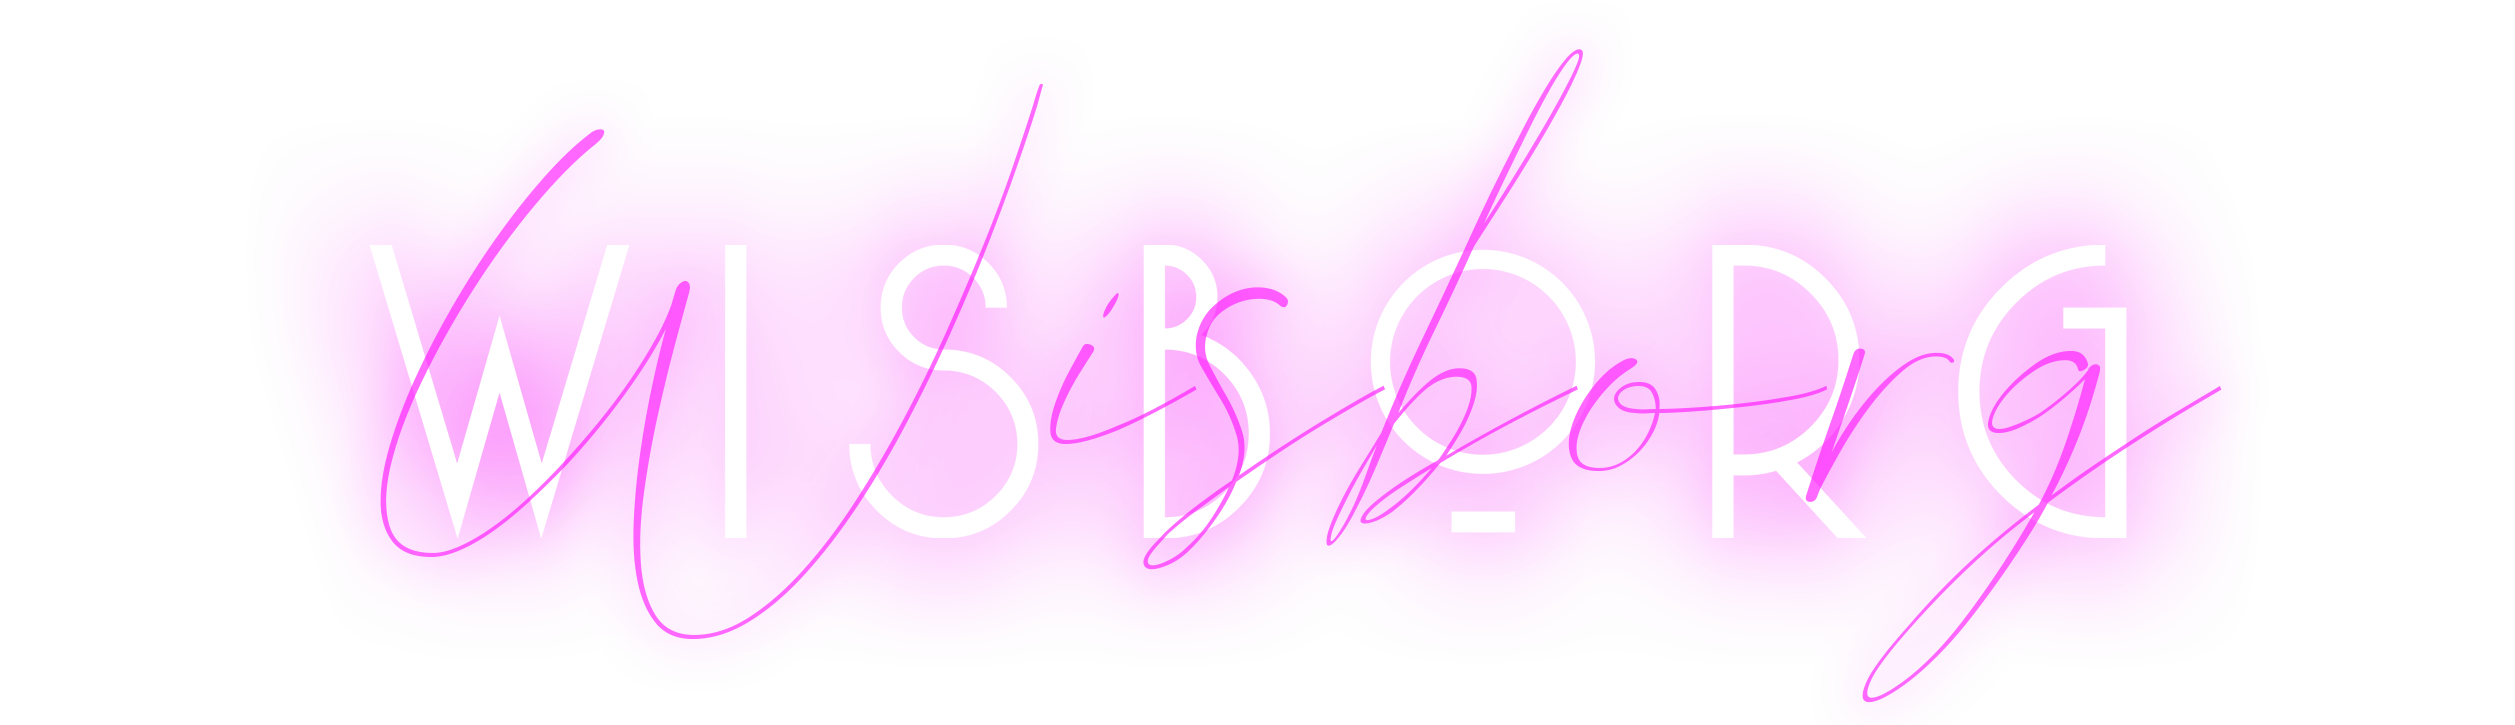 wisborg band logo